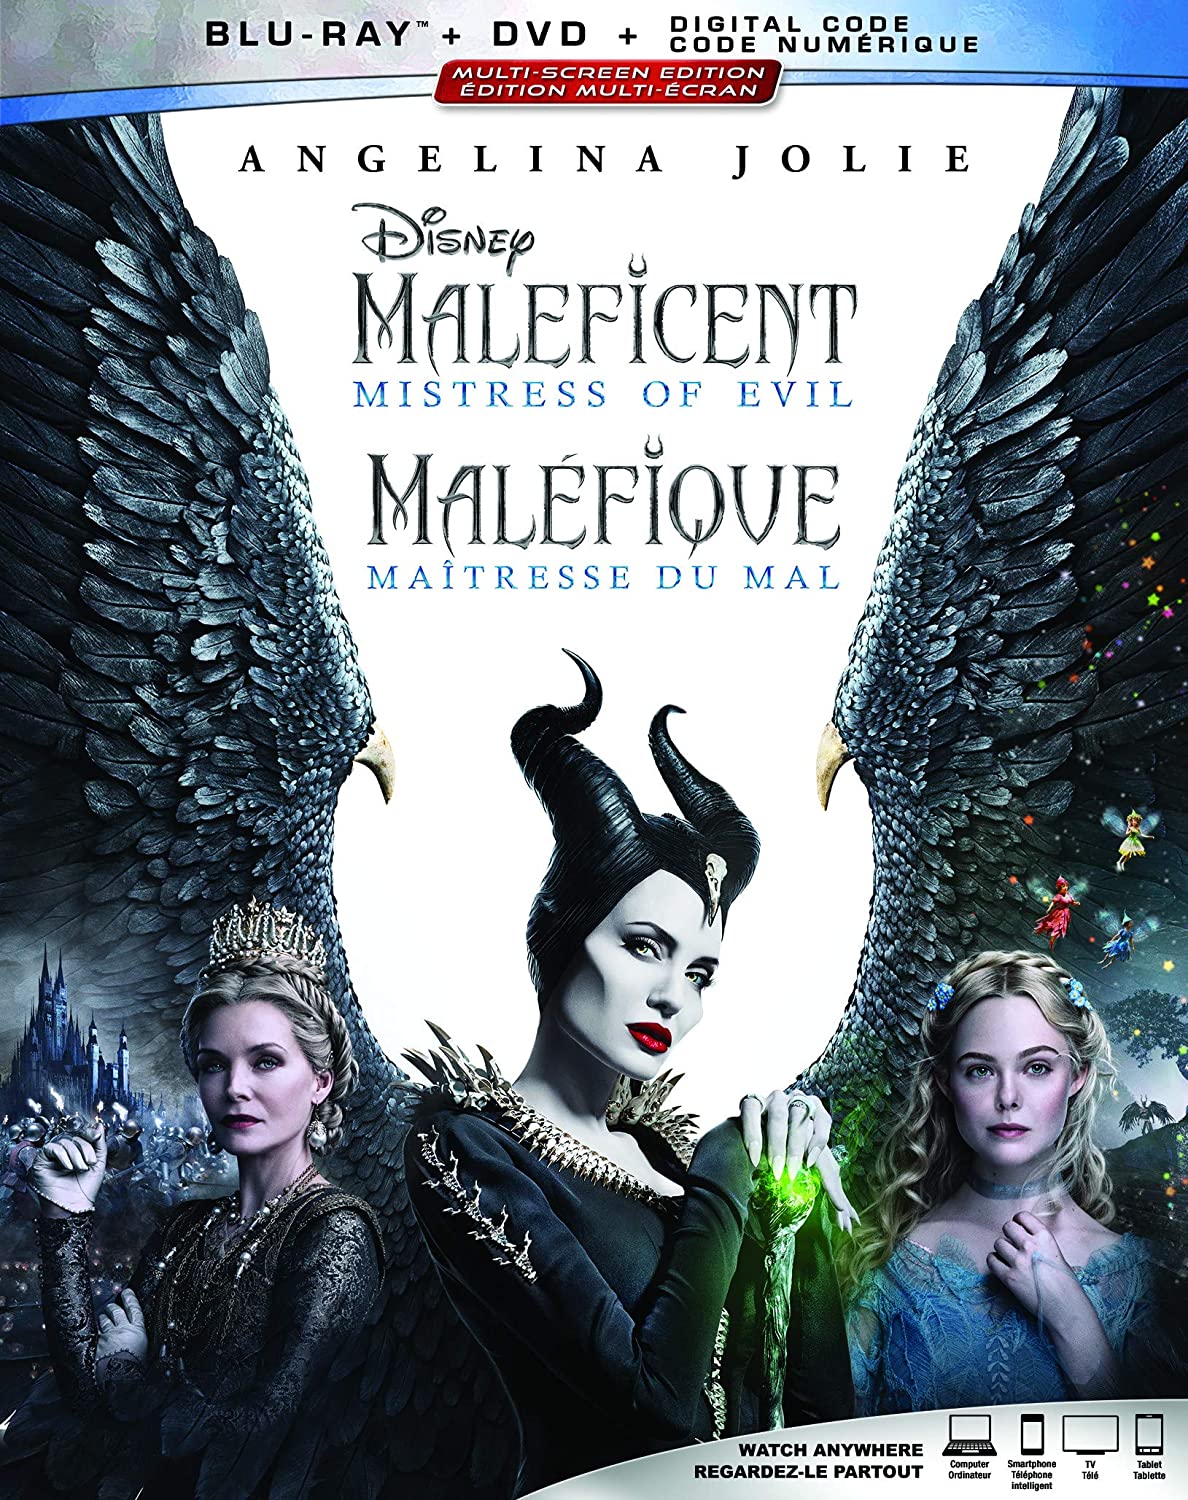 Maleficent: Mistress of Evil [Blu-ray + DVD + Digital] (Bilingual) [Blu-ray]